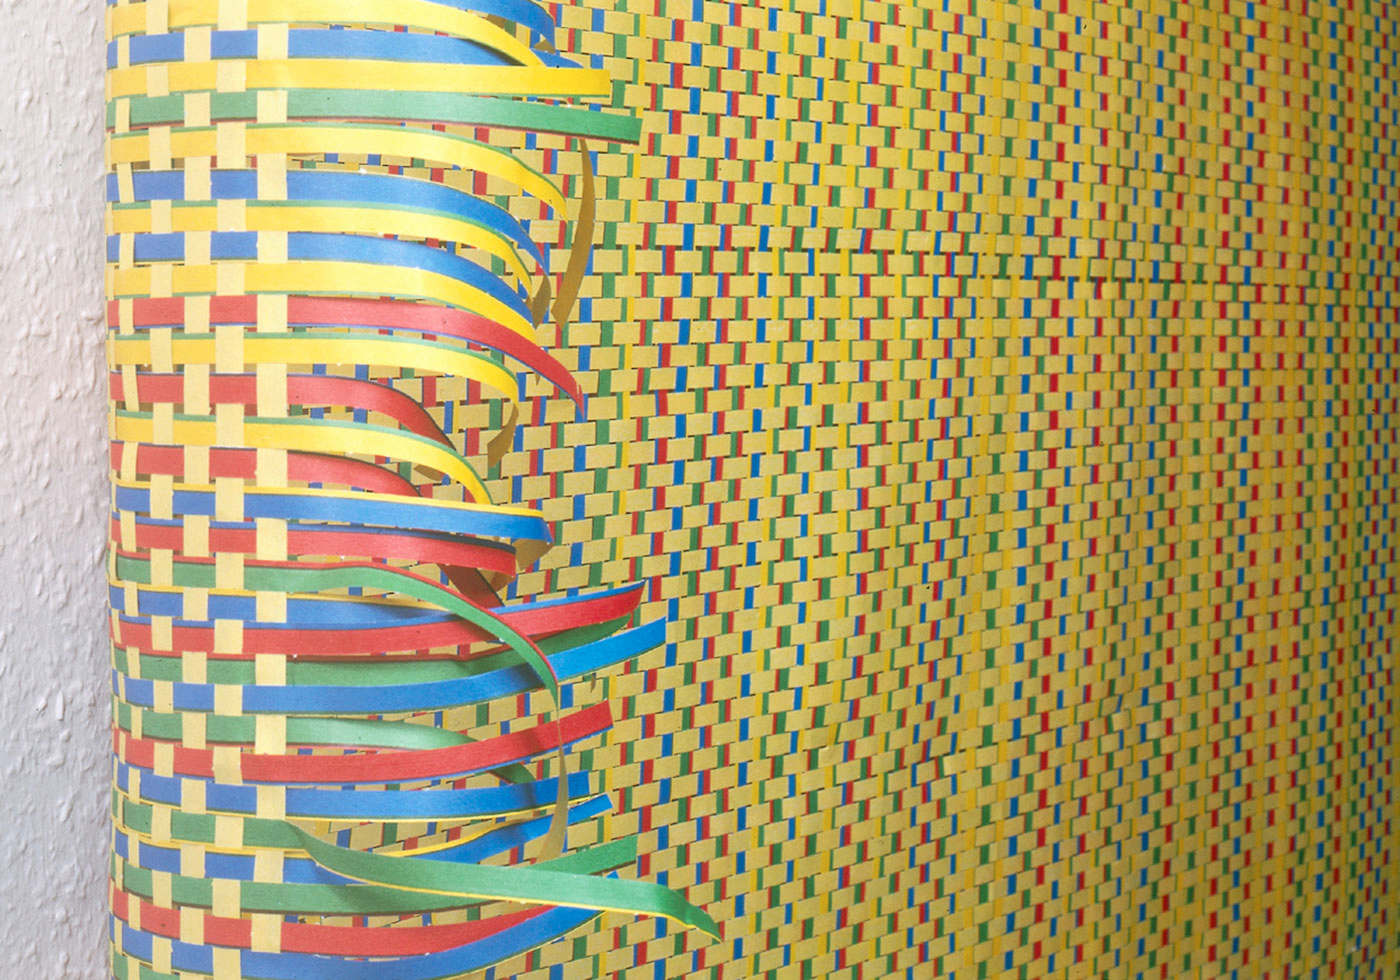  Luftschlangen, 350x350,  Detail,  Heike Klussmann,  K W Institutefor Contempory Art,  Berlin